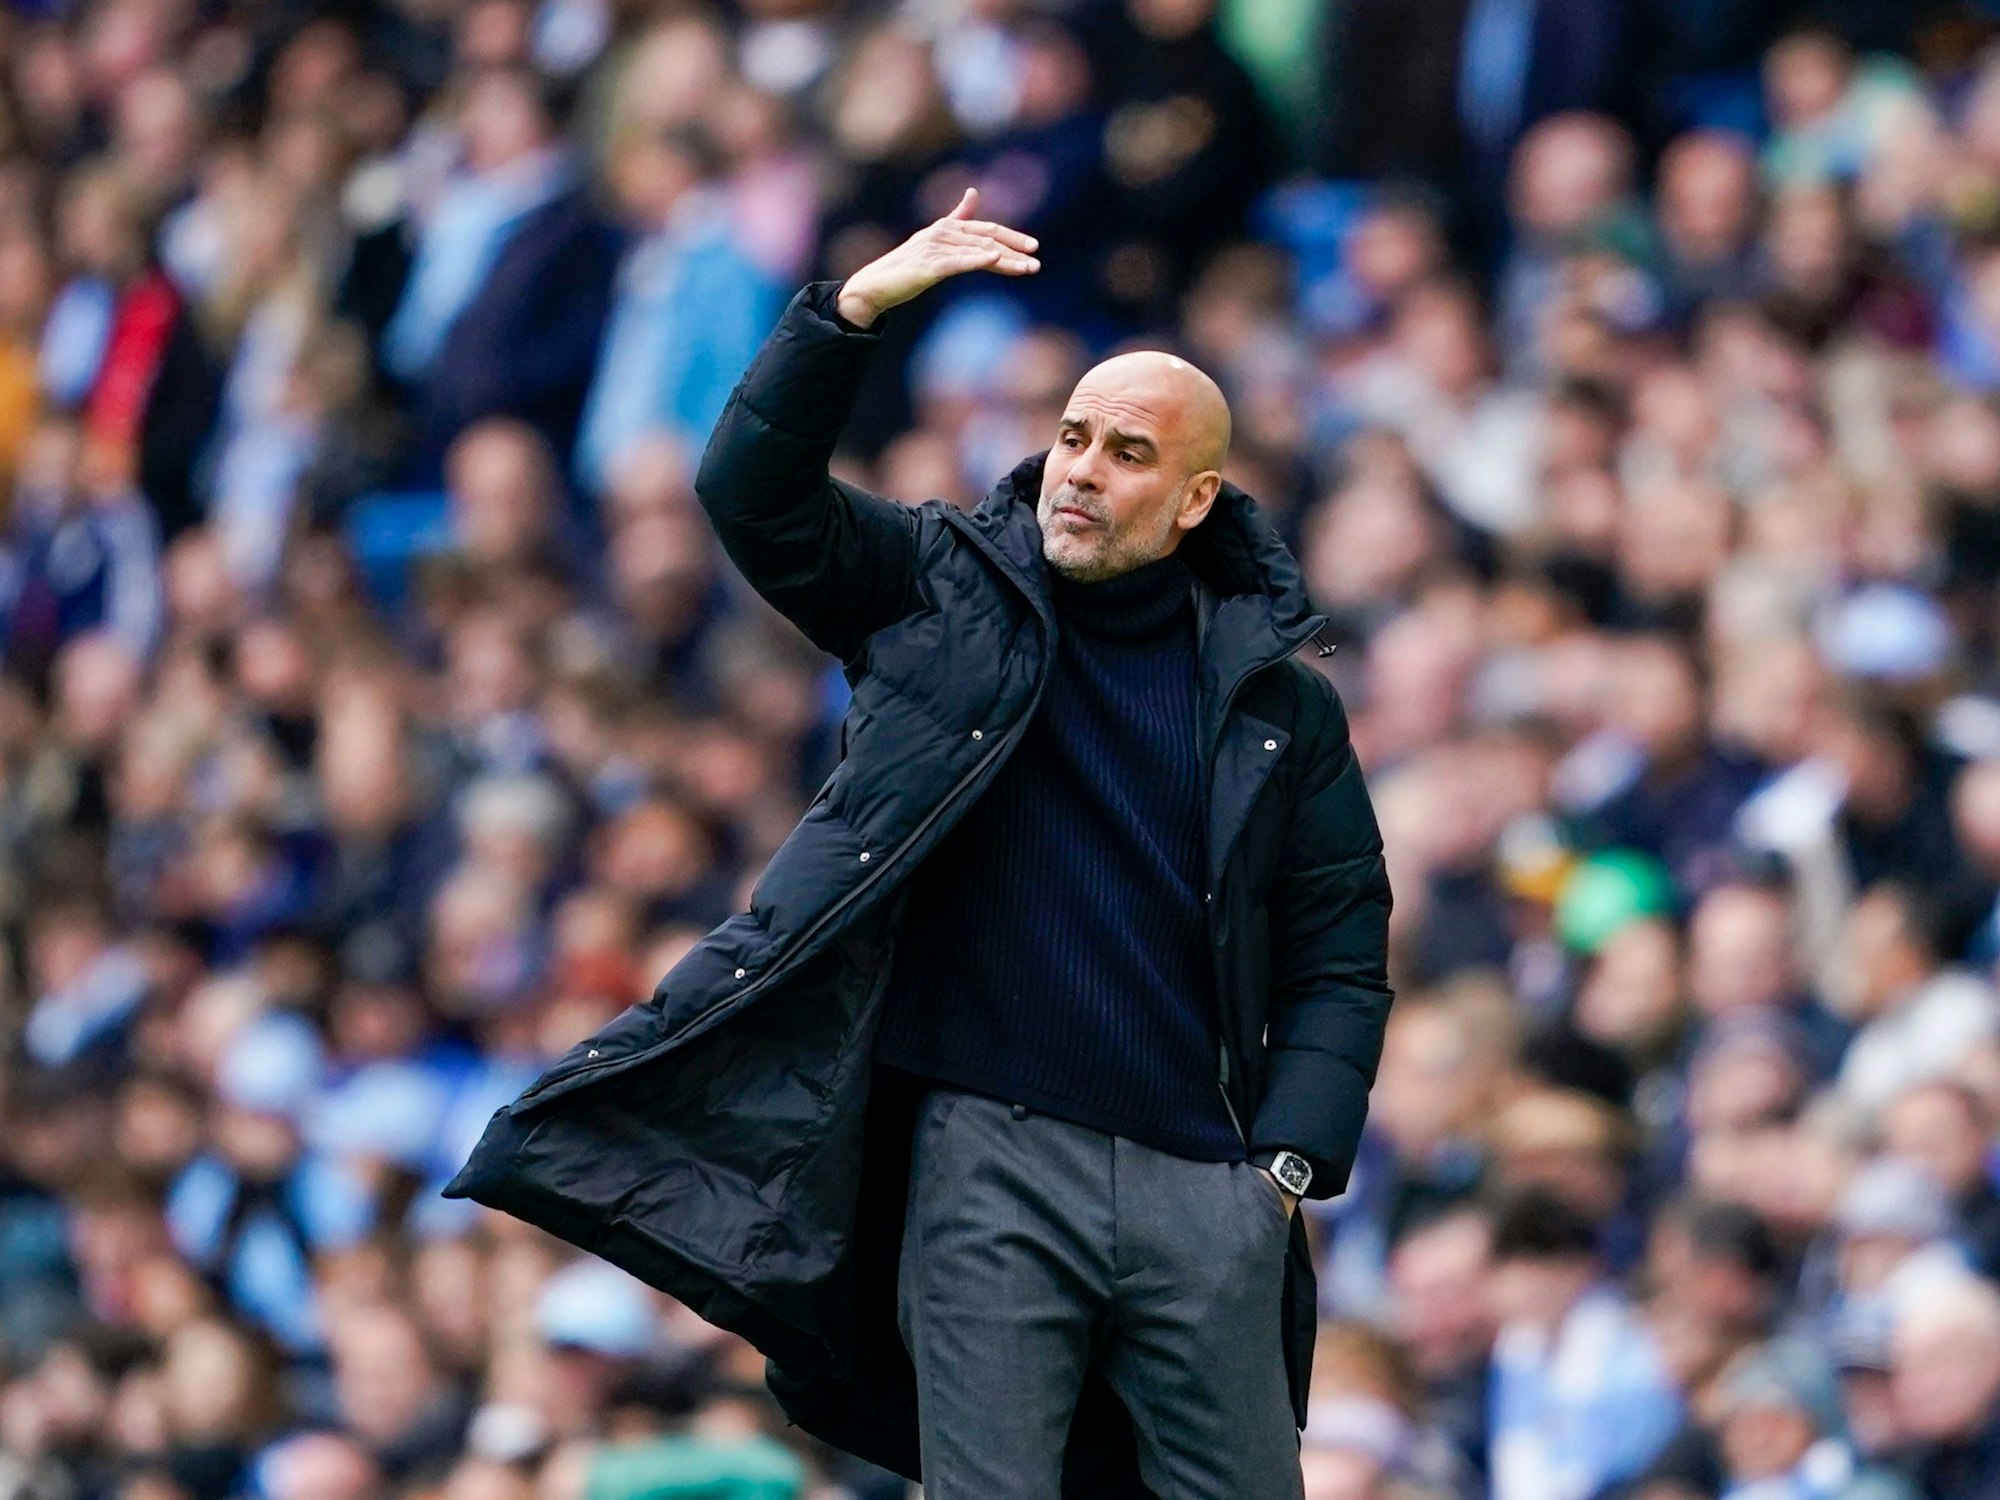 Pep Guardiola, Trainer von Manchester City, gestikuliert während des Spiels.